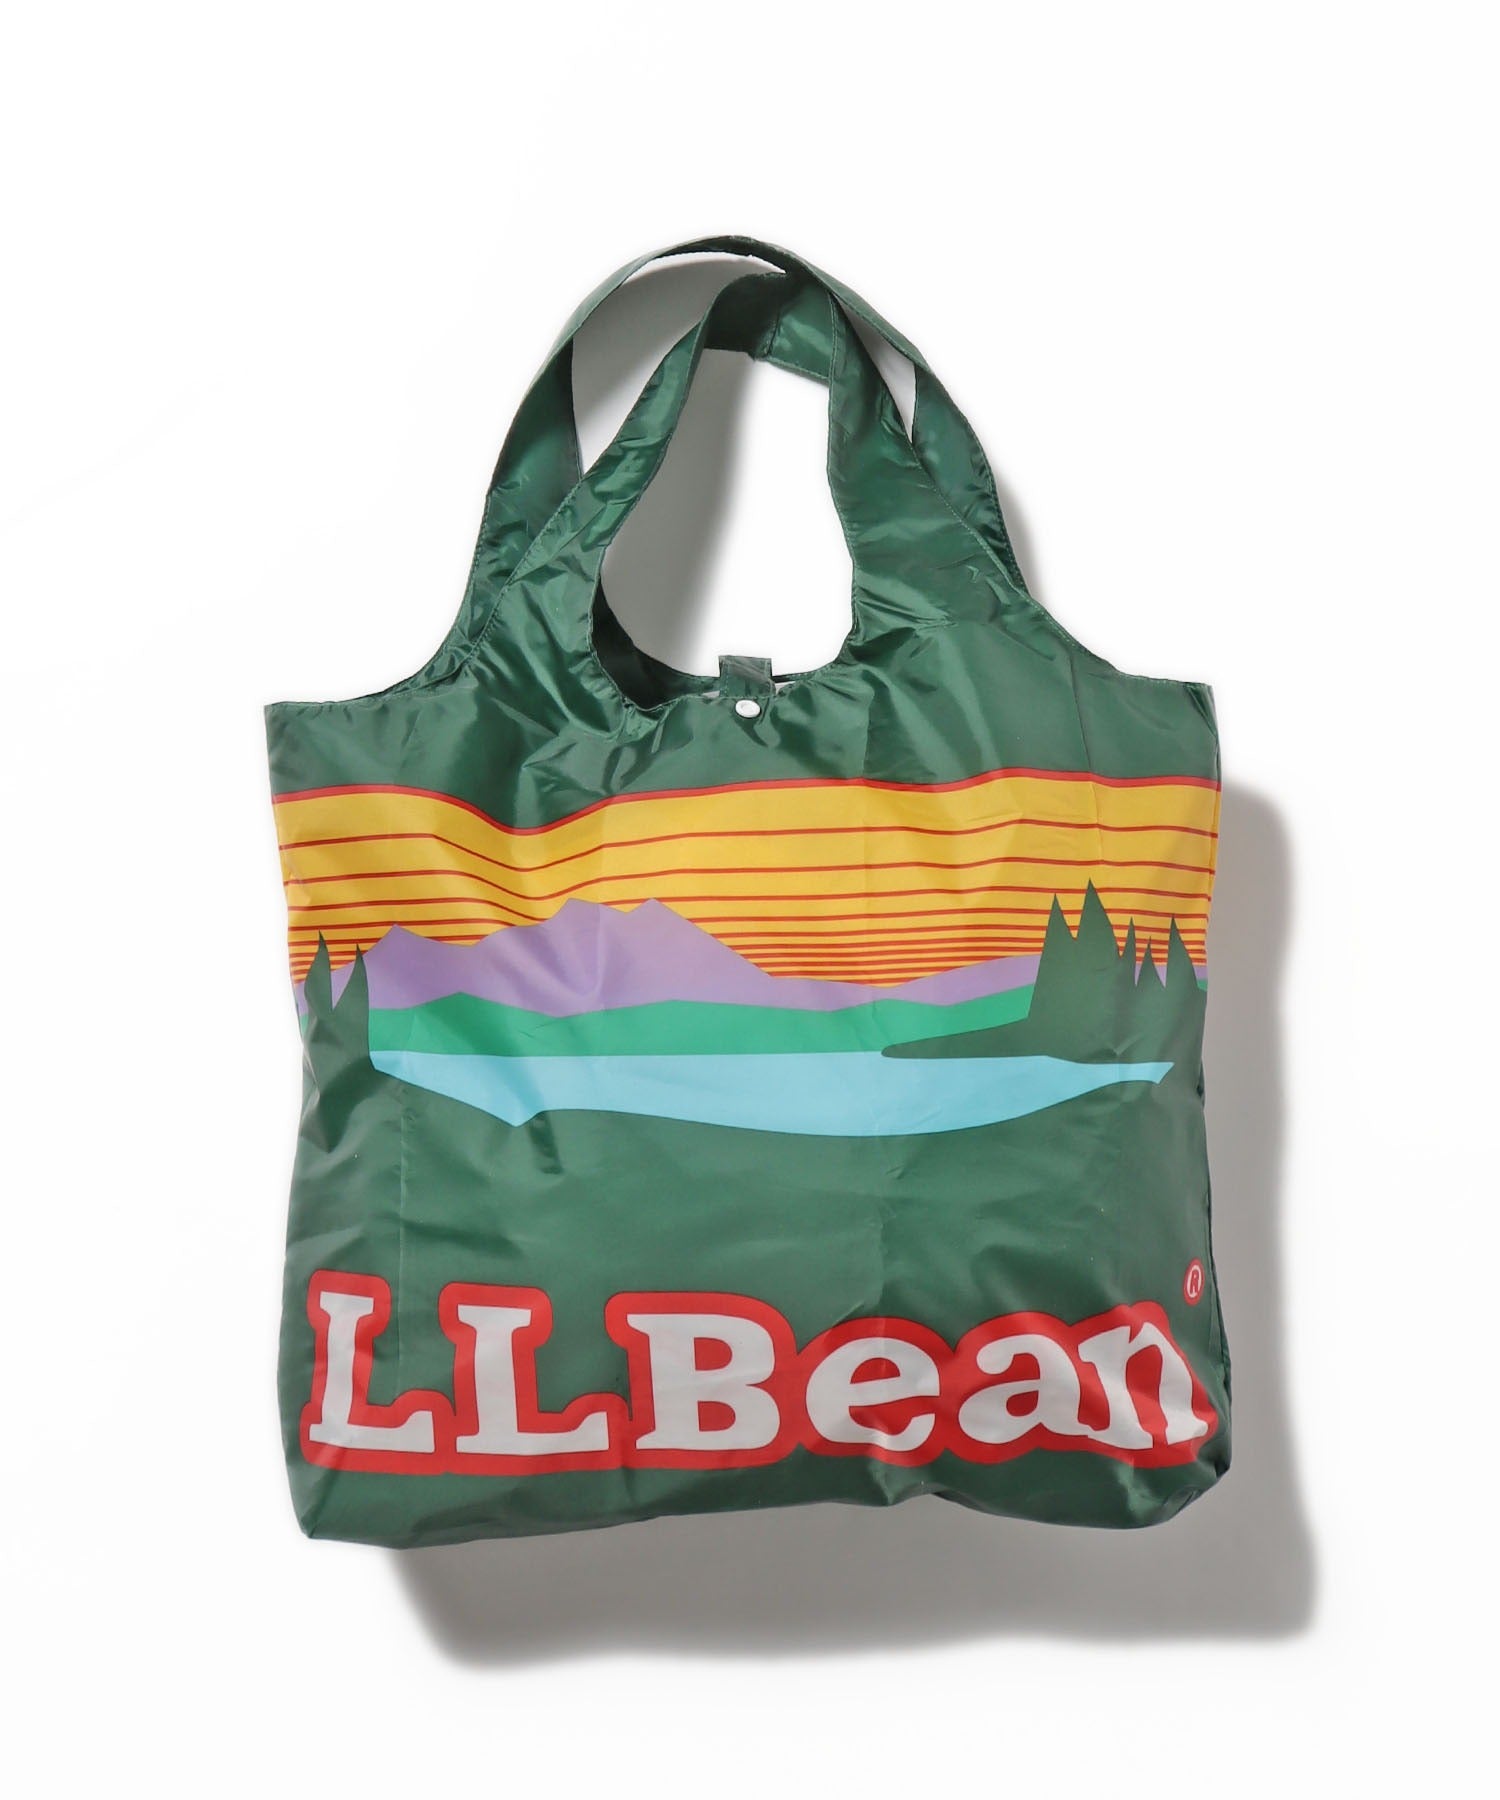 L.L.Bean/エル・エル・ビーン カタディン フォールディング バッグ